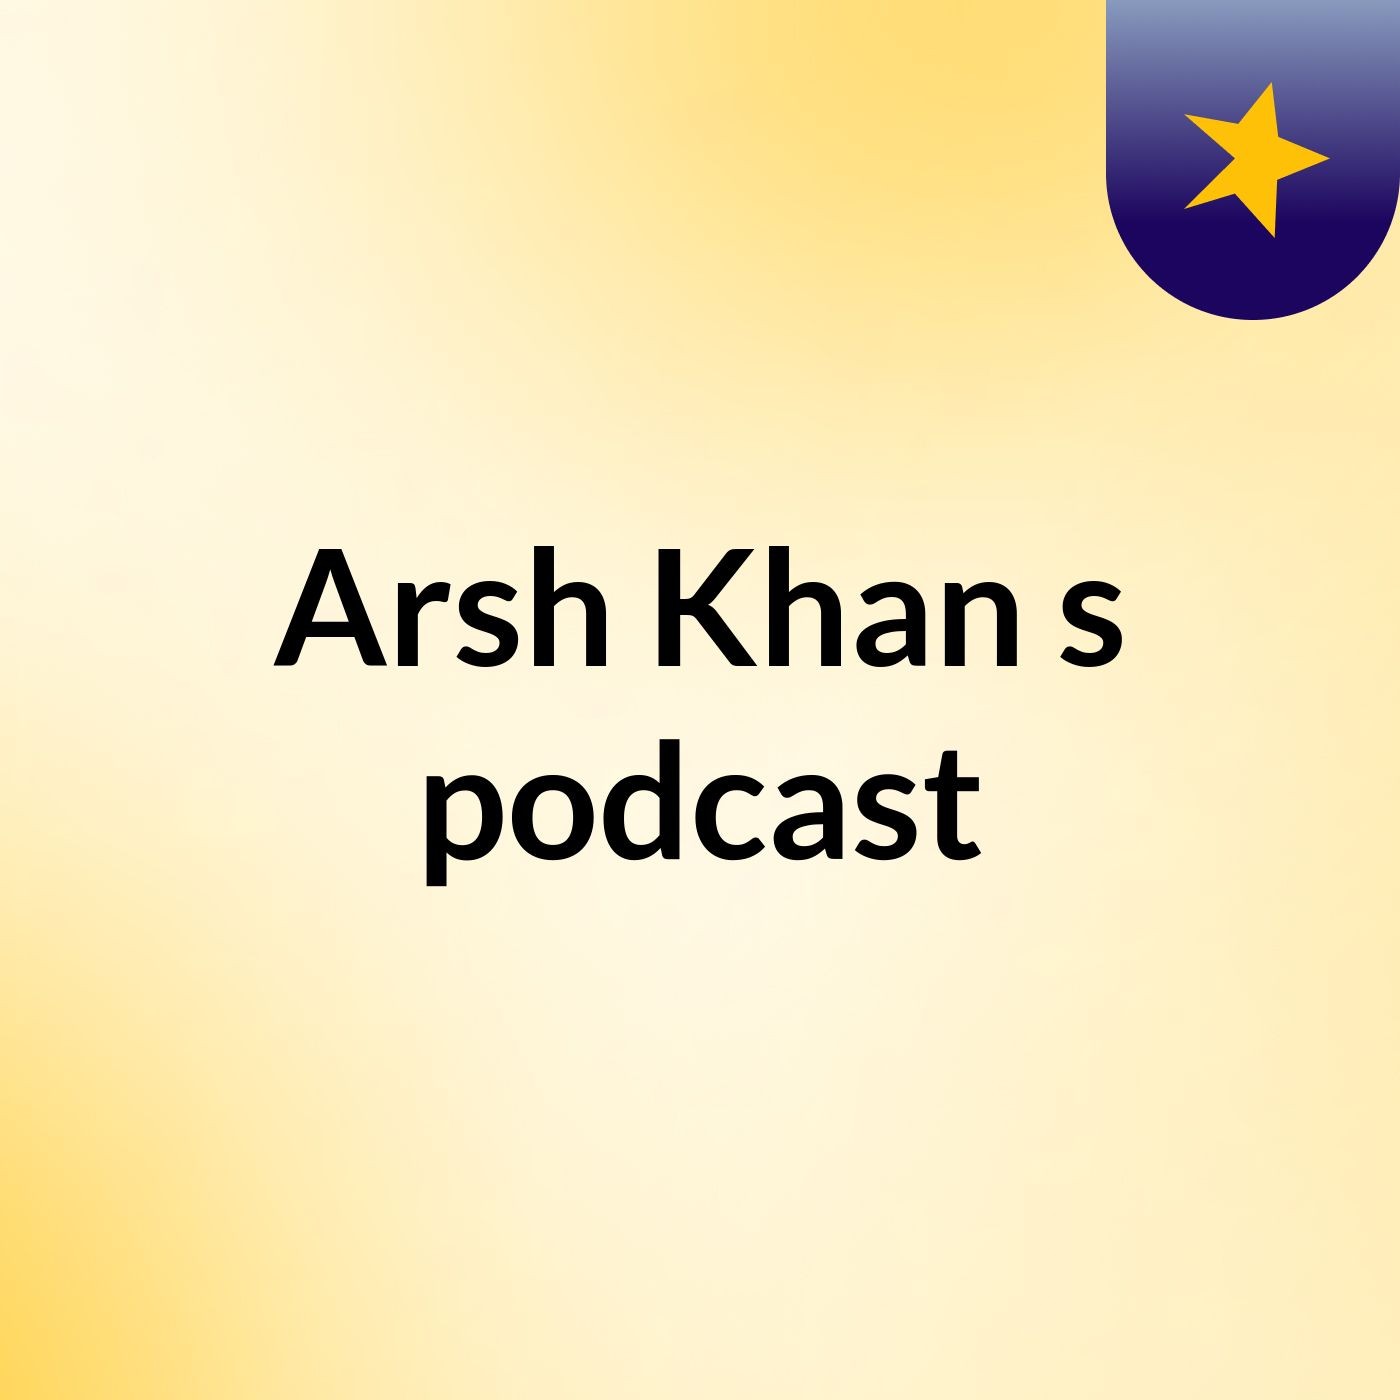 Arsh Khan's podcast